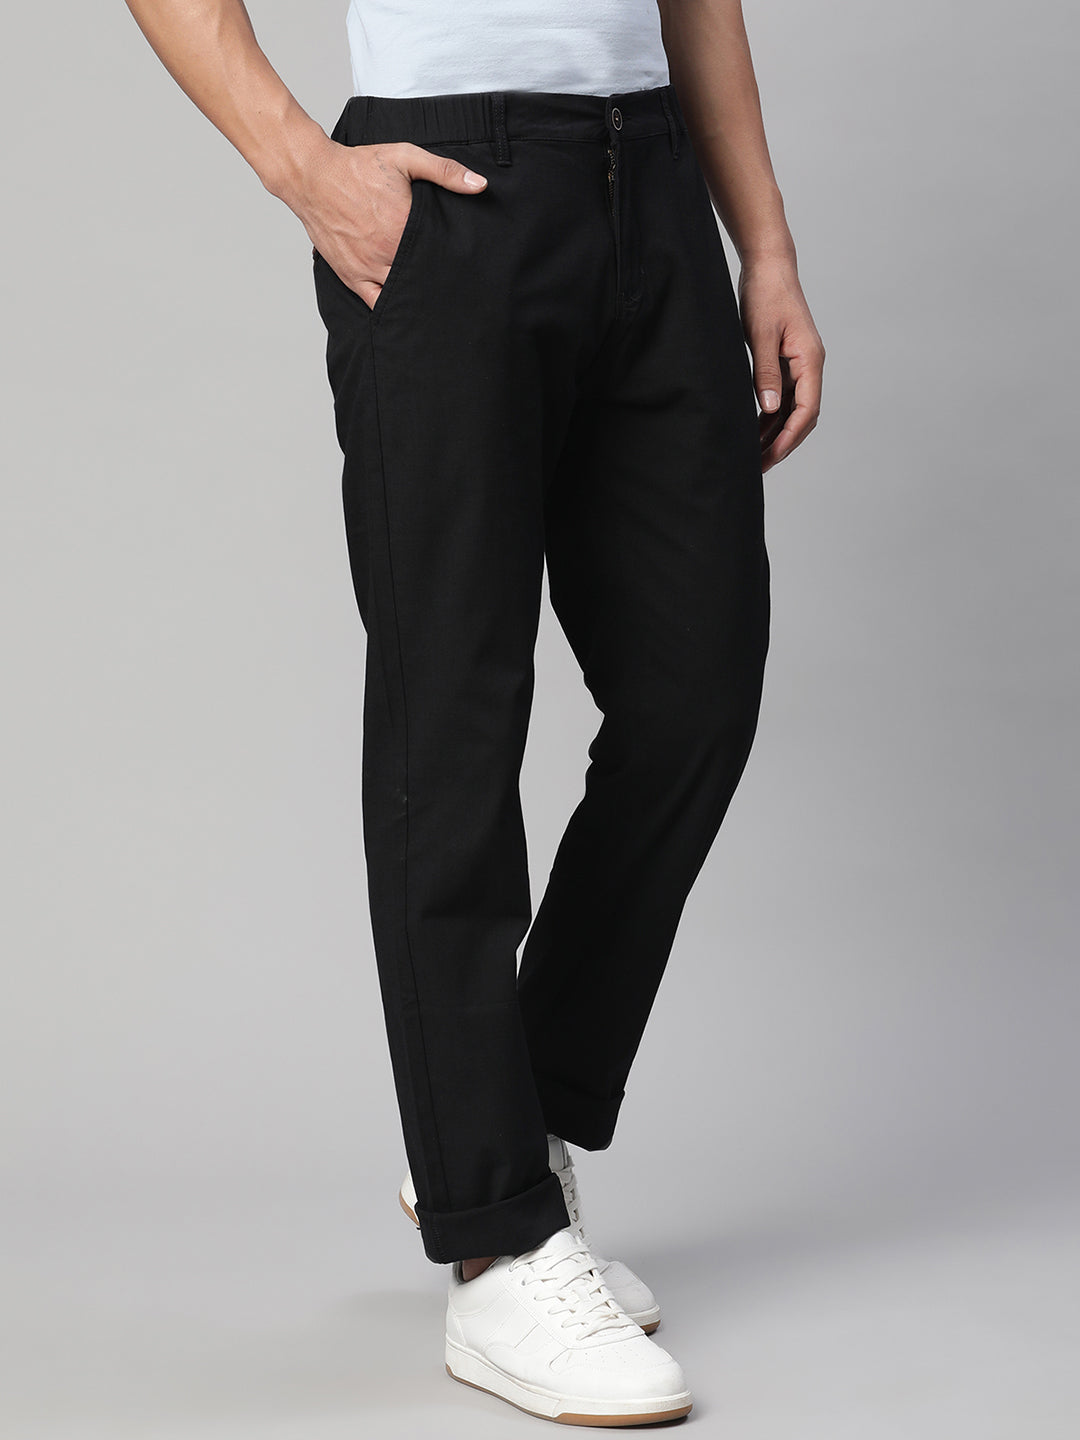 SemiFormal Trousers  Buy SemiFormal Trousers for Men Online